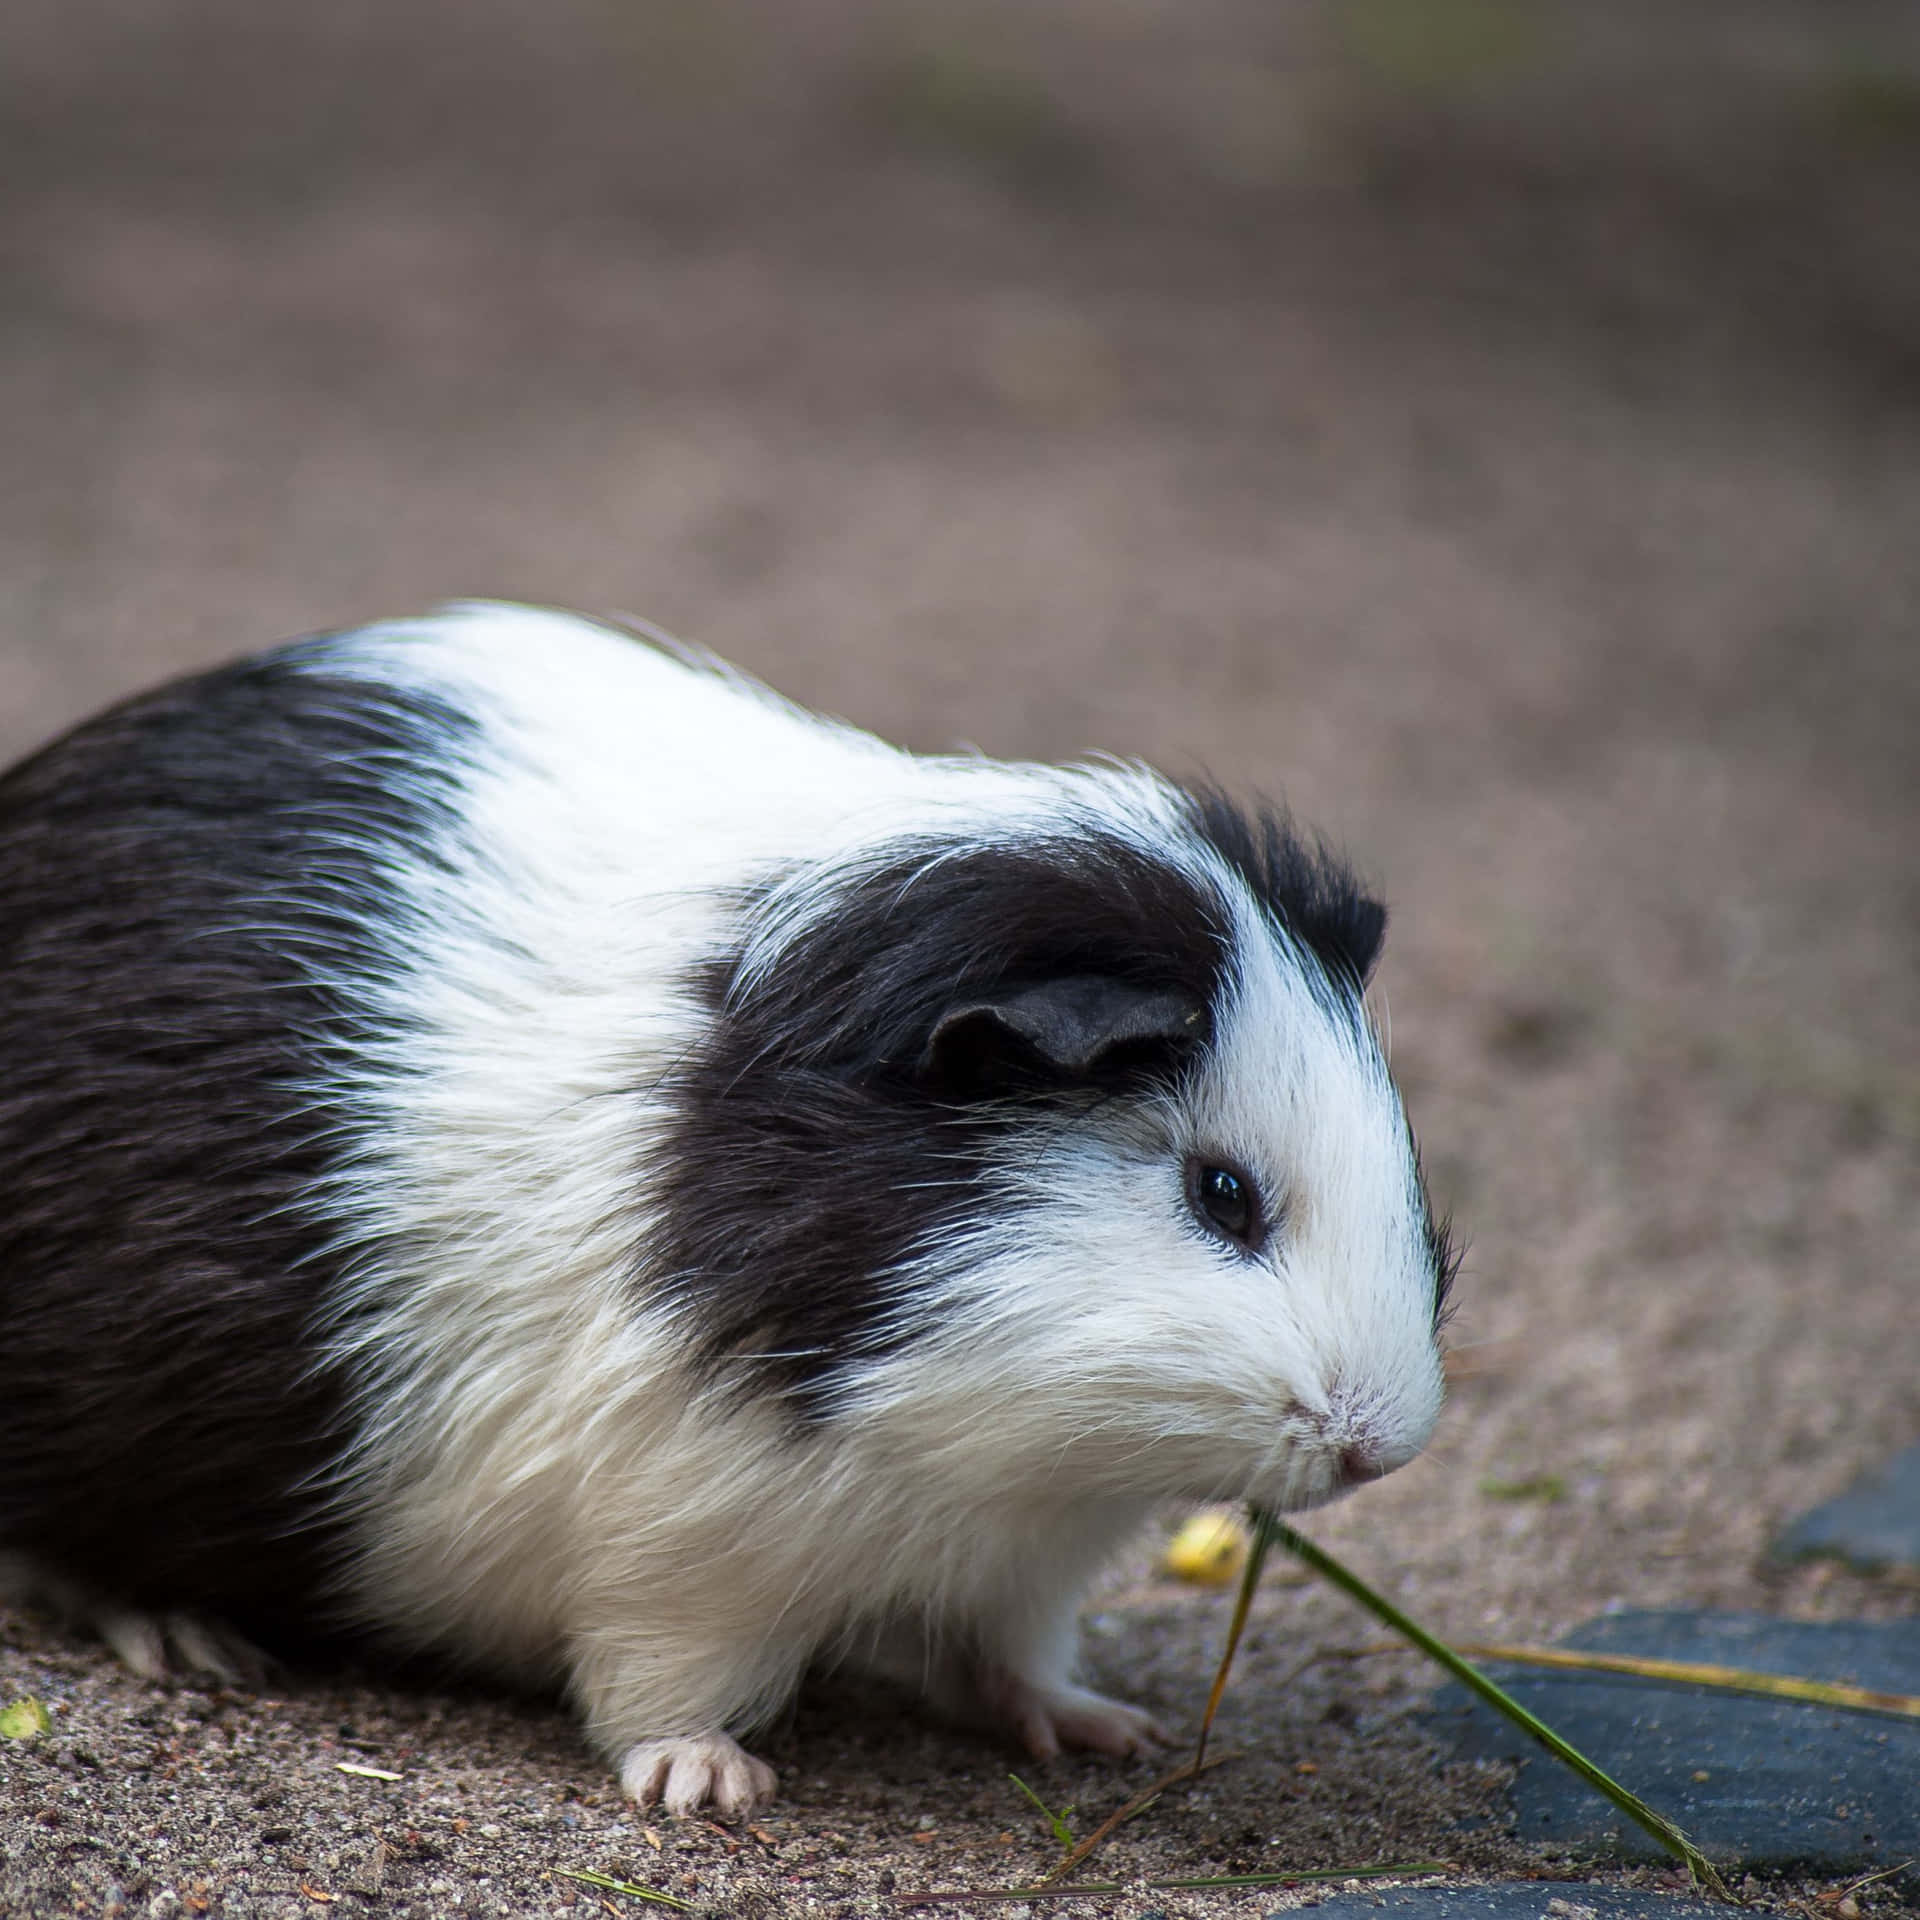 a guinea pig eating a piece of grass